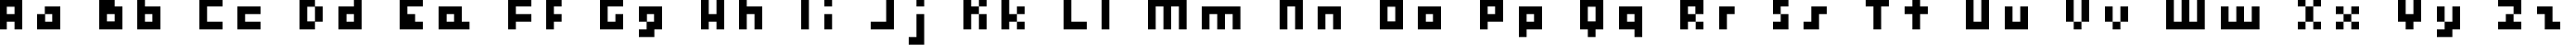 Пример написания английского алфавита шрифтом hooge 04_56